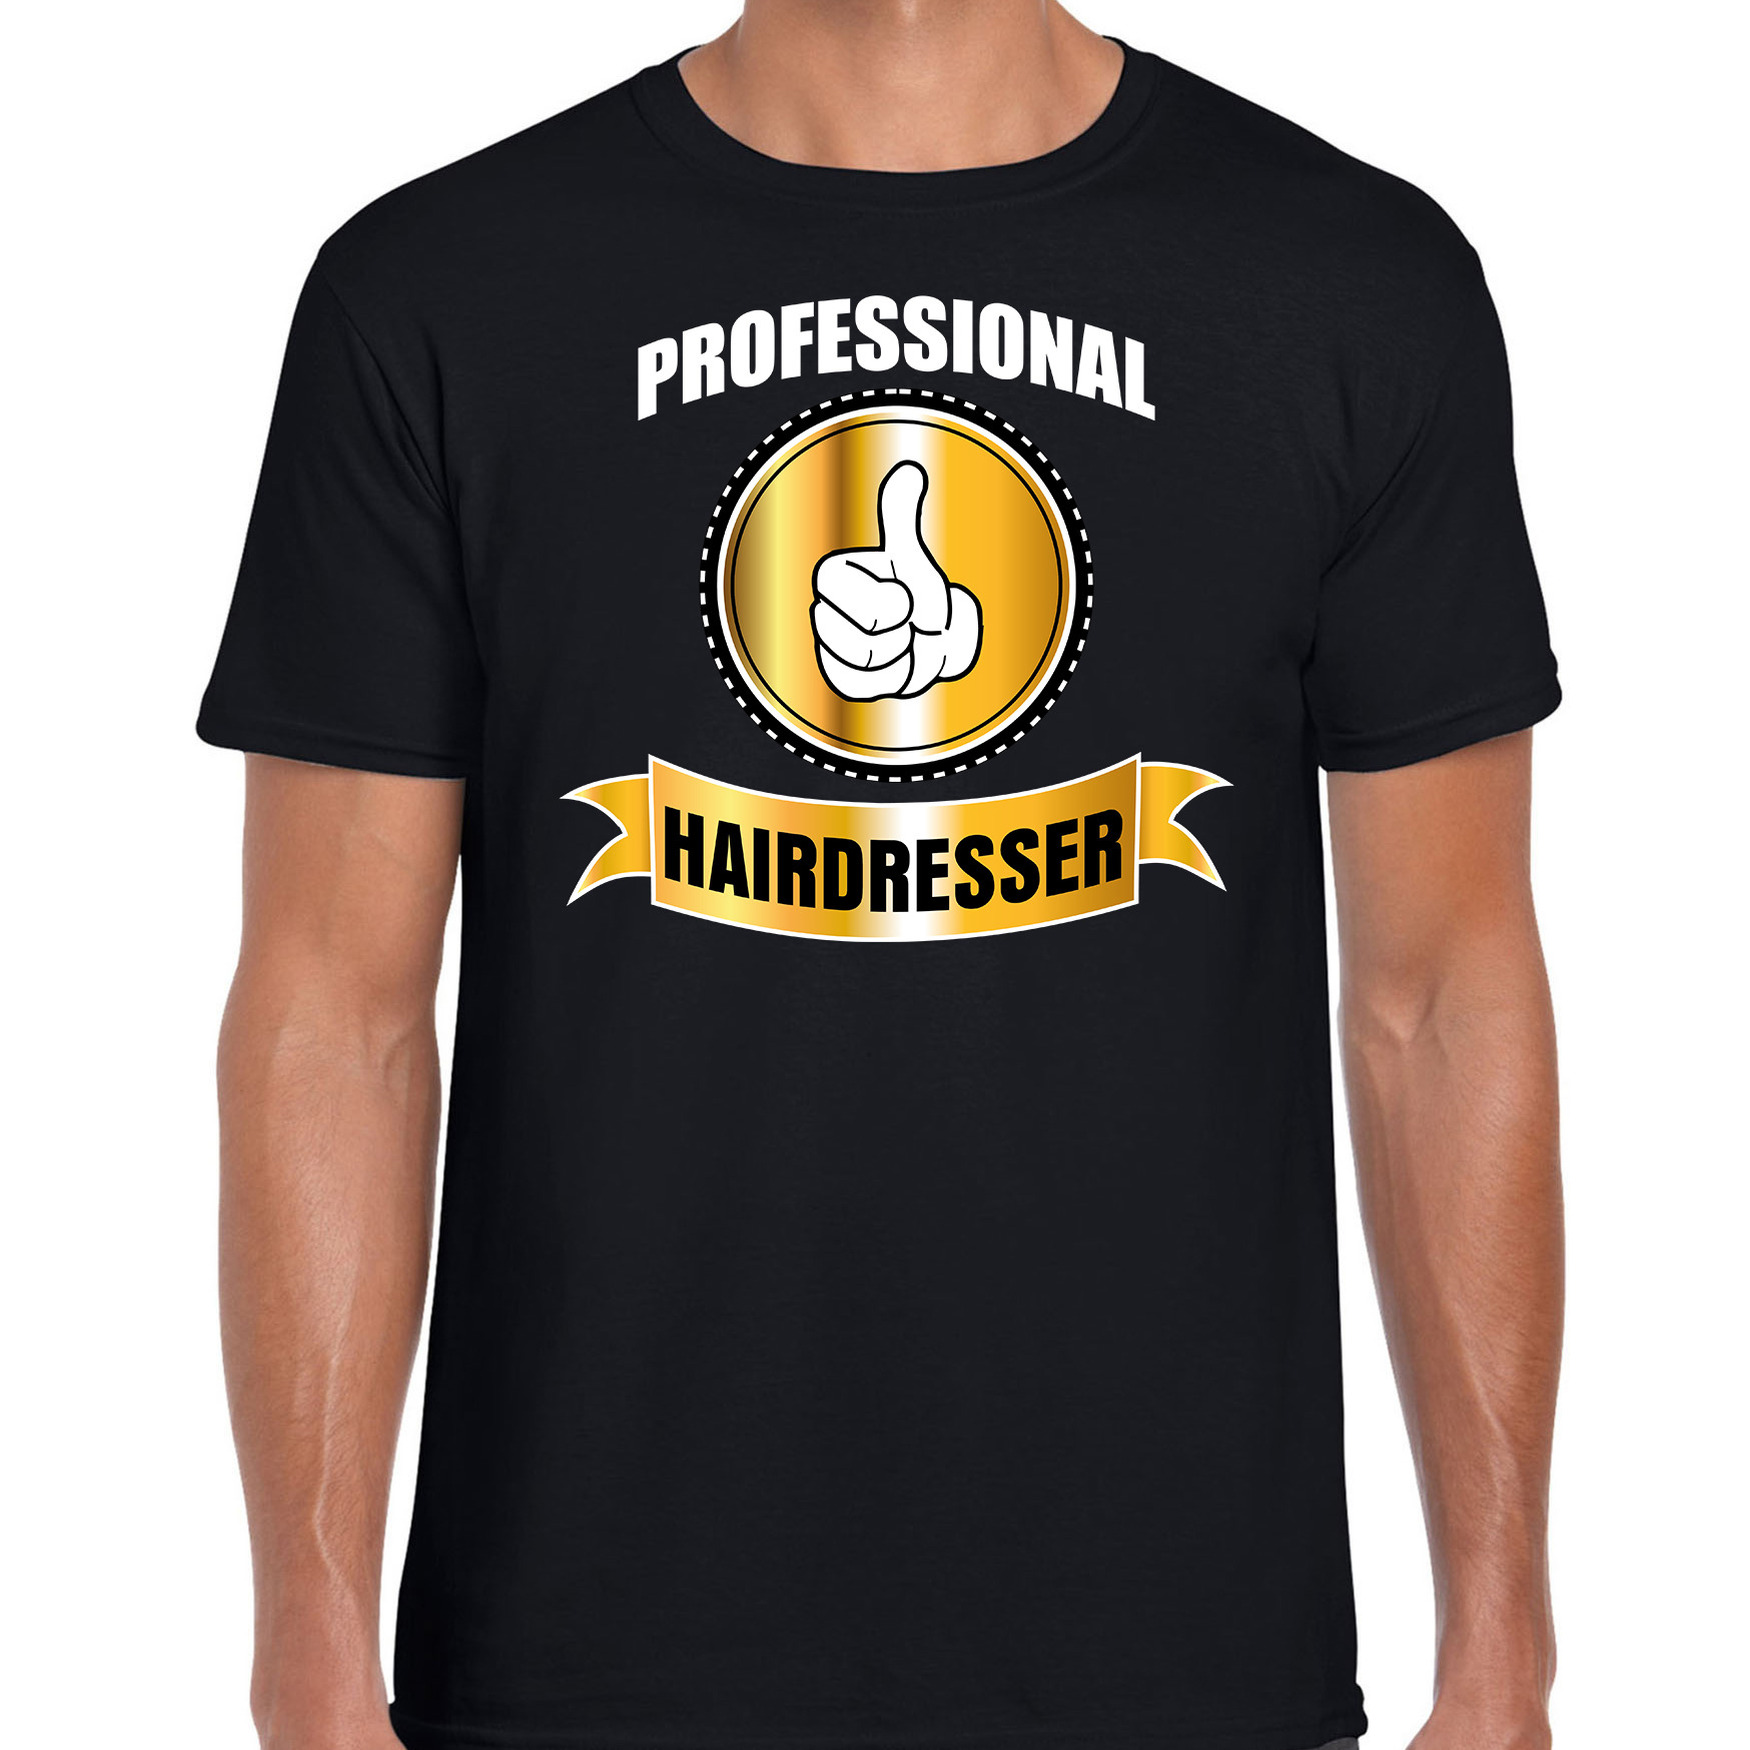 Professional hairdresser-professionele kapper t-shirt zwart heren Kapper cadeau shirt